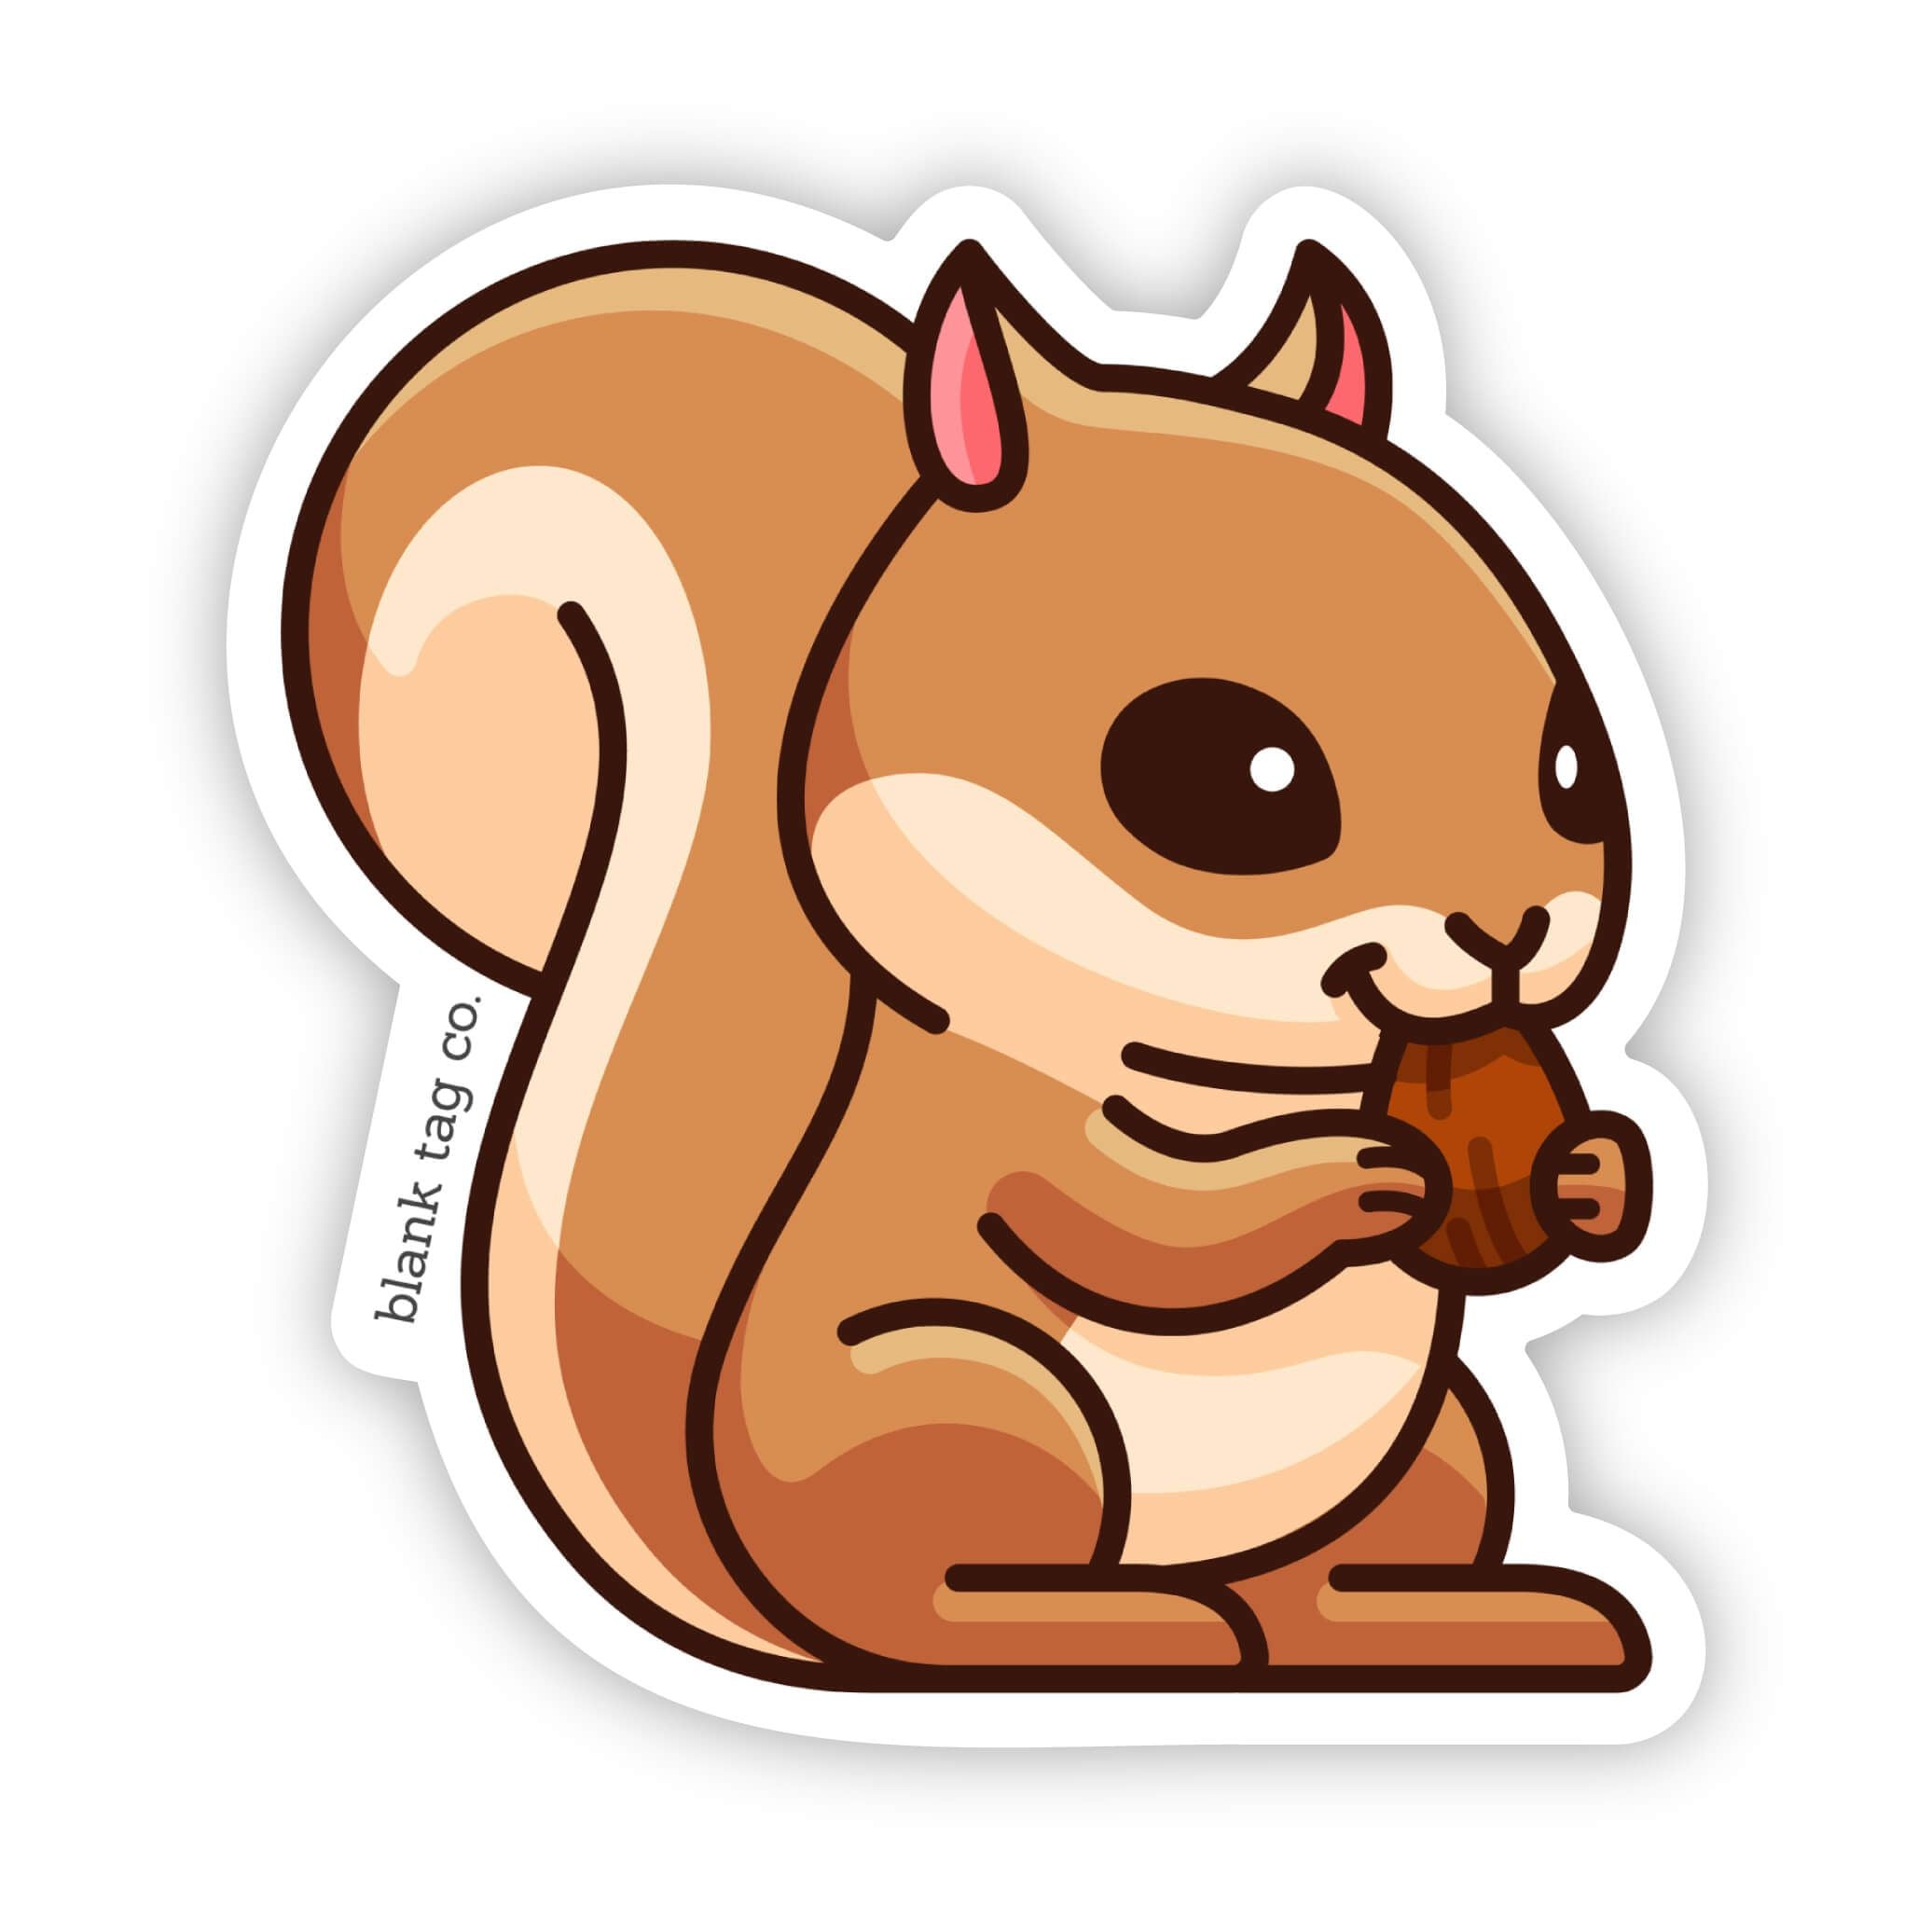 The Squirrel Sticker